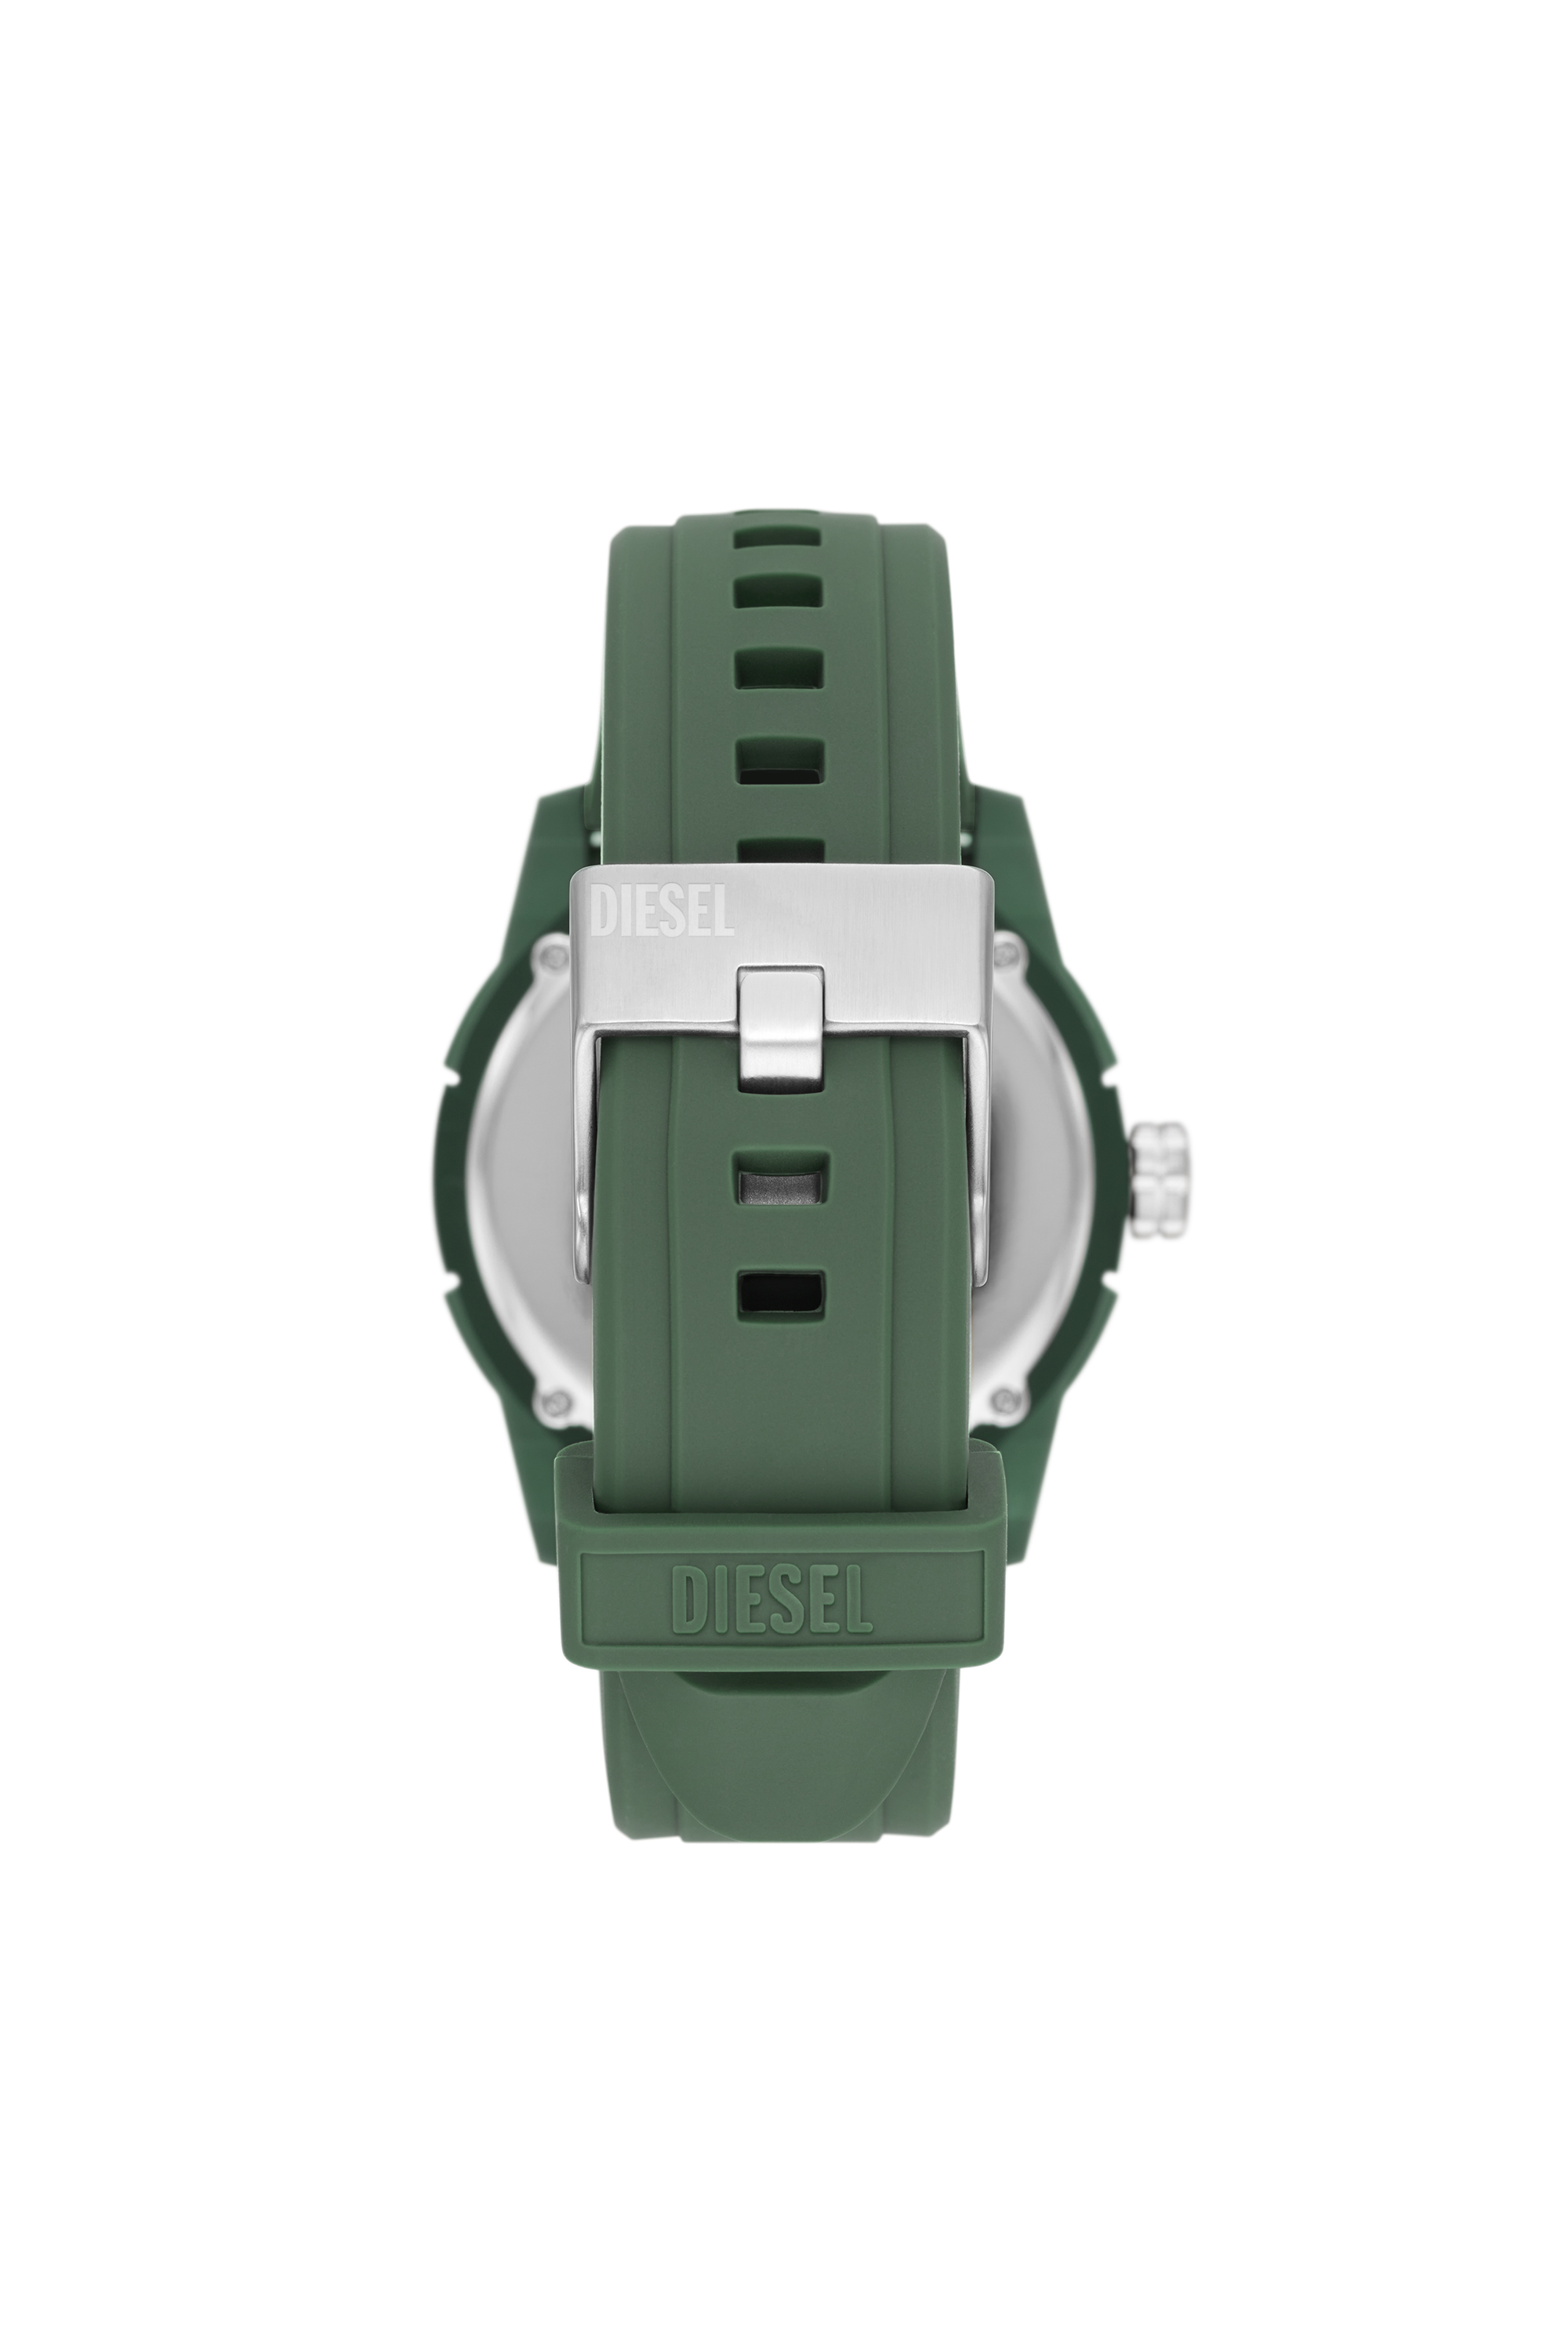 Diesel - DZ1983, Green - Image 2